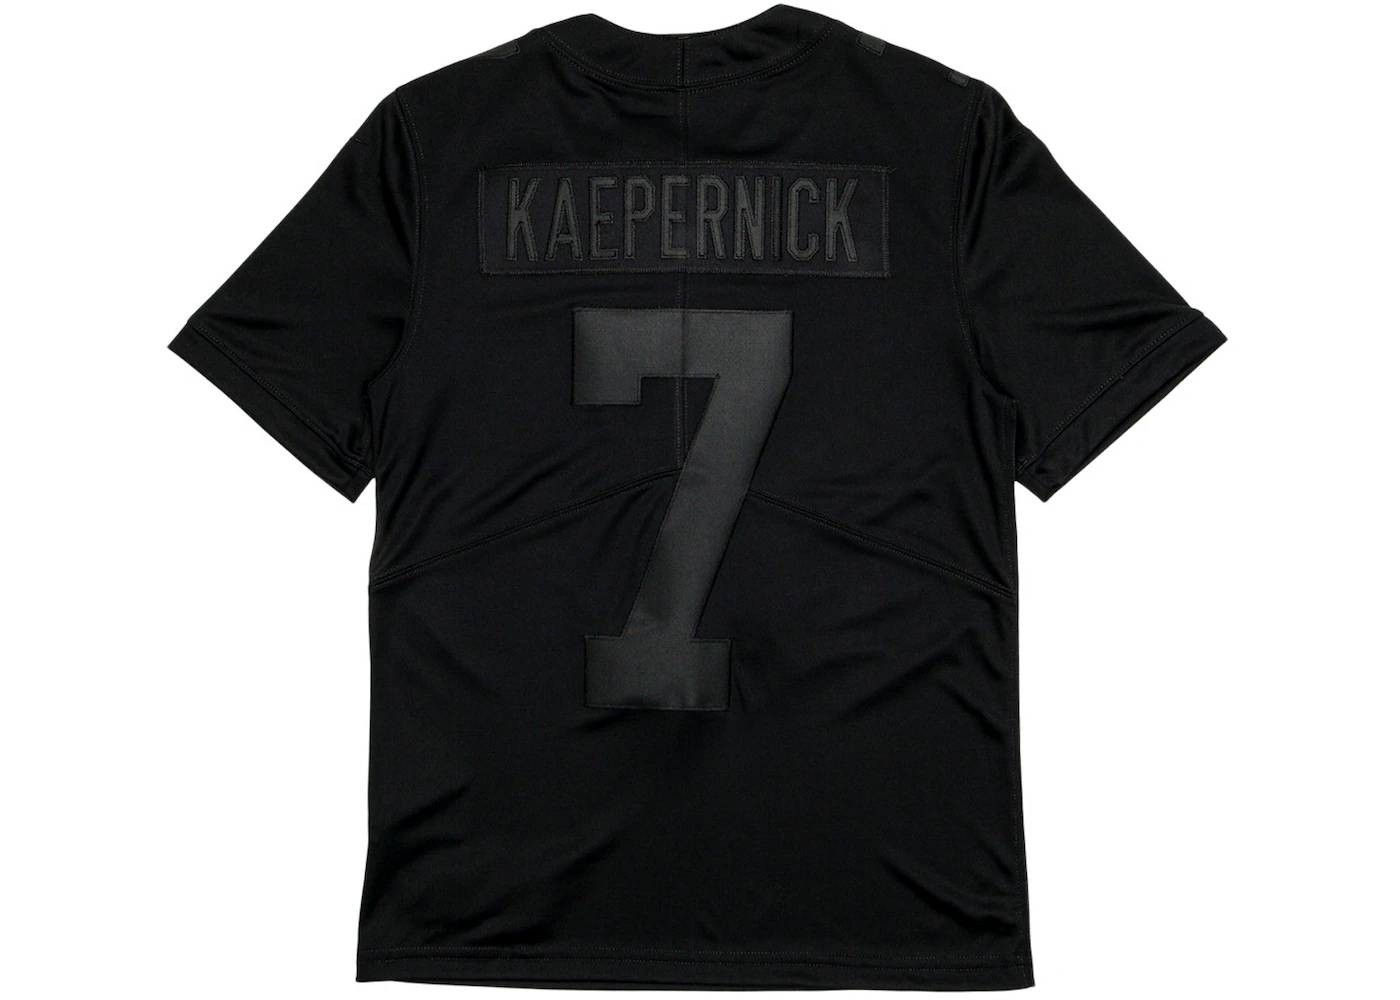 Nike Kaepernick Icon 2.0 Jersey Black - FW20 Men's - US